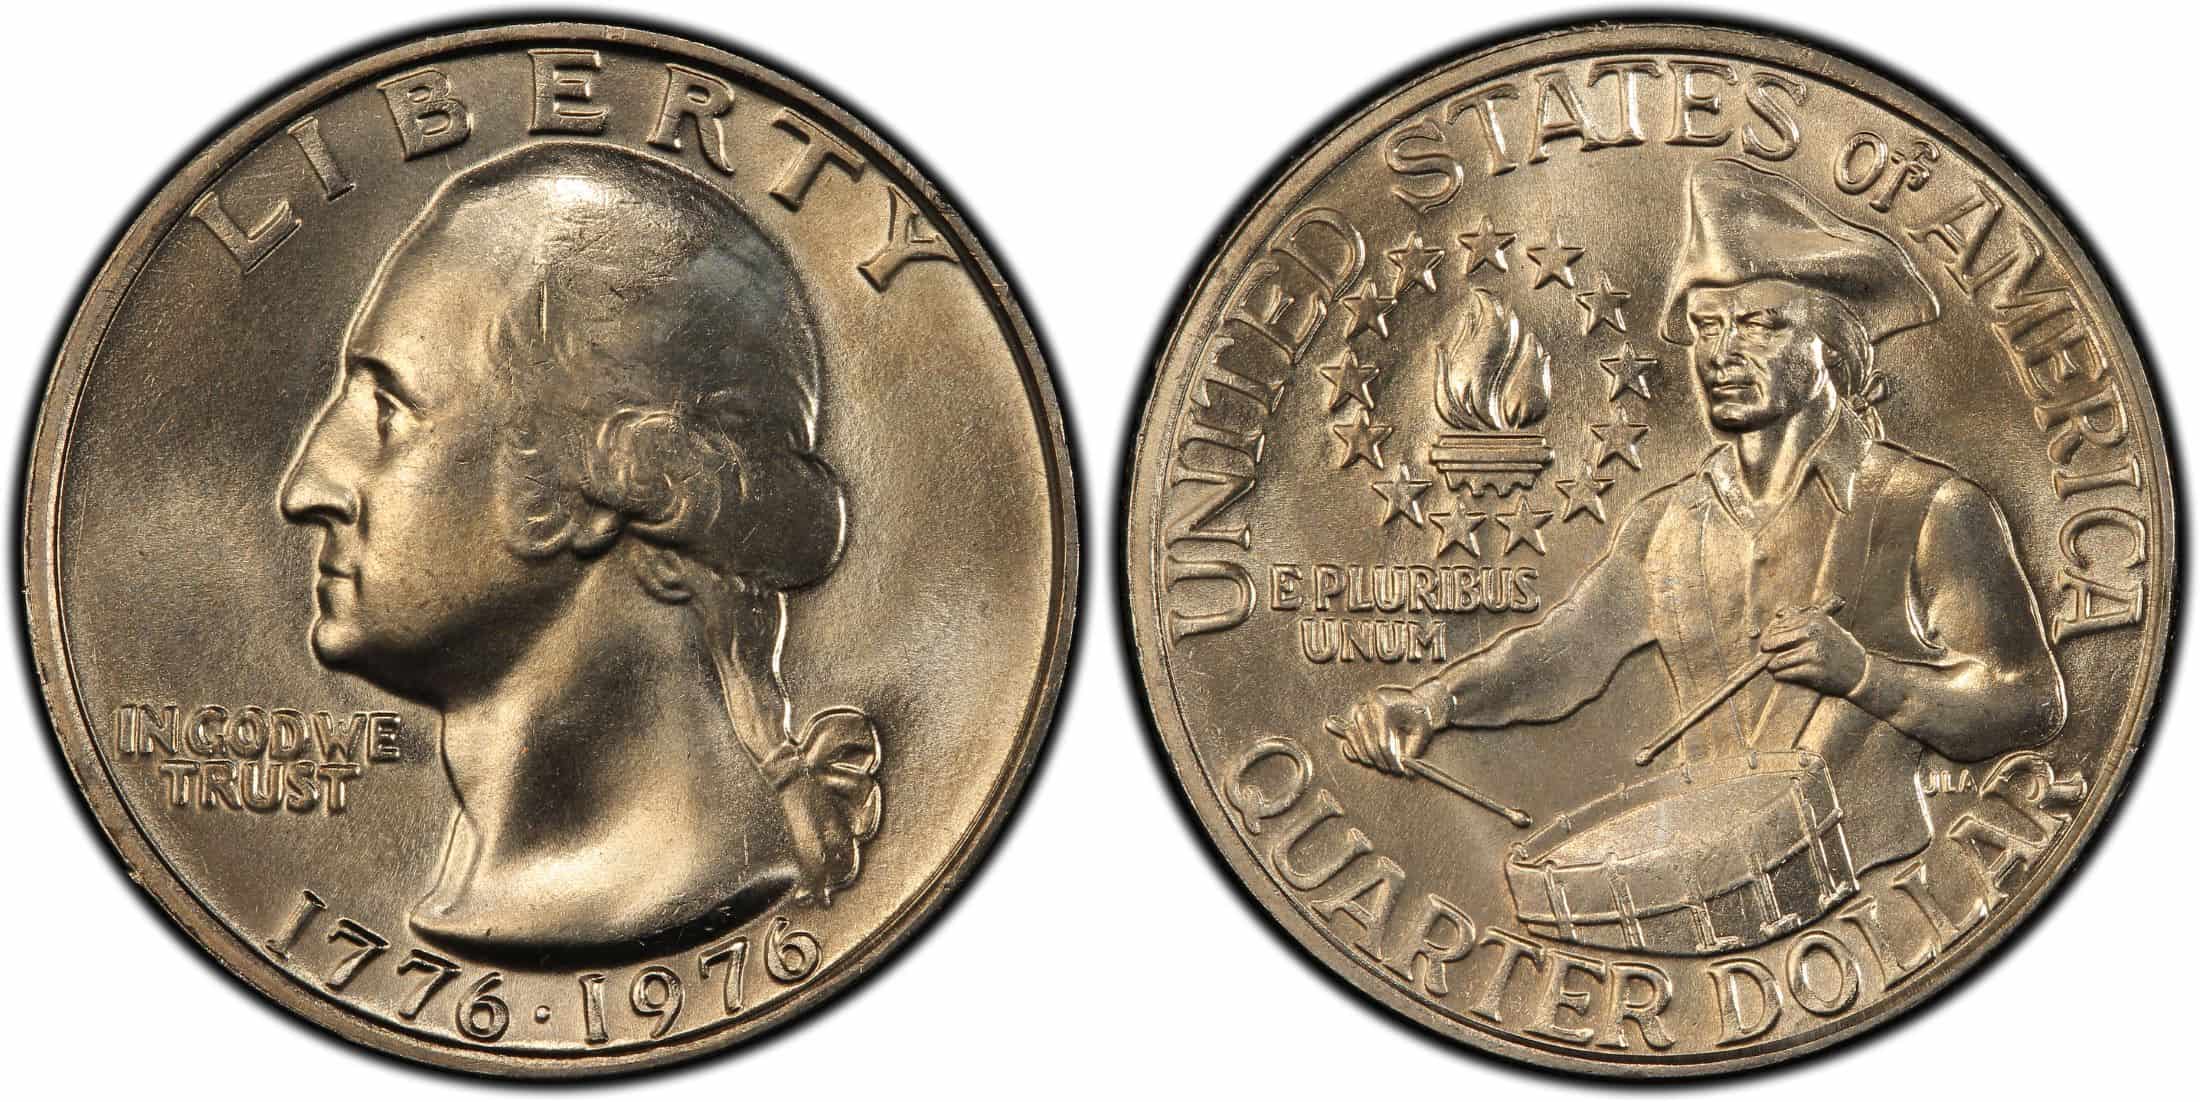 1776-1976 No Mint Mark Washington quarter (copper-nickel clad)